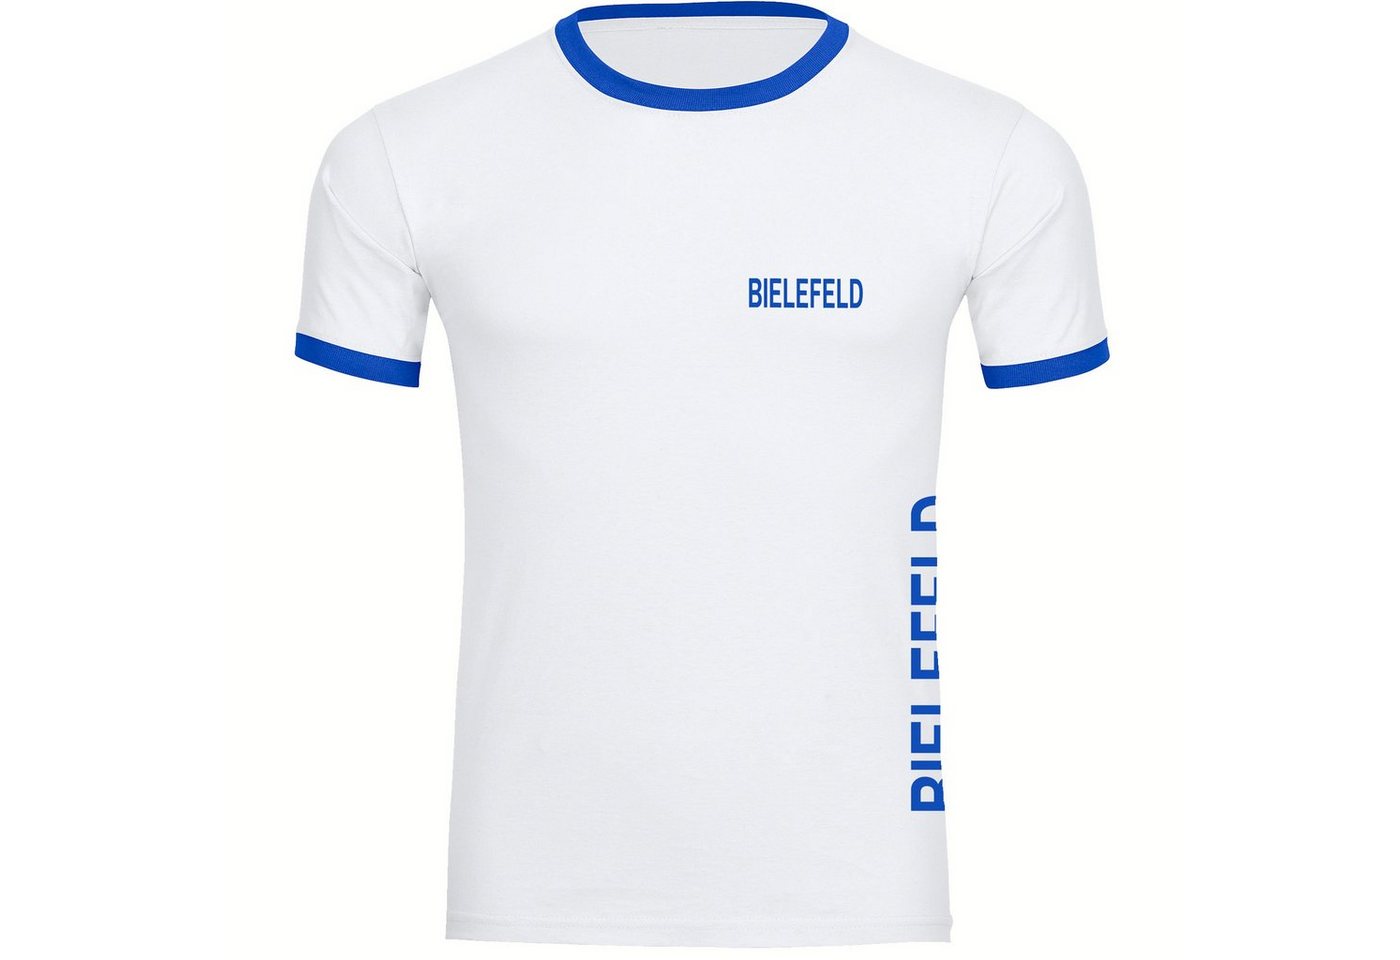 multifanshop T-Shirt Kontrast Bielefeld - Brust & Seite - Männer von multifanshop